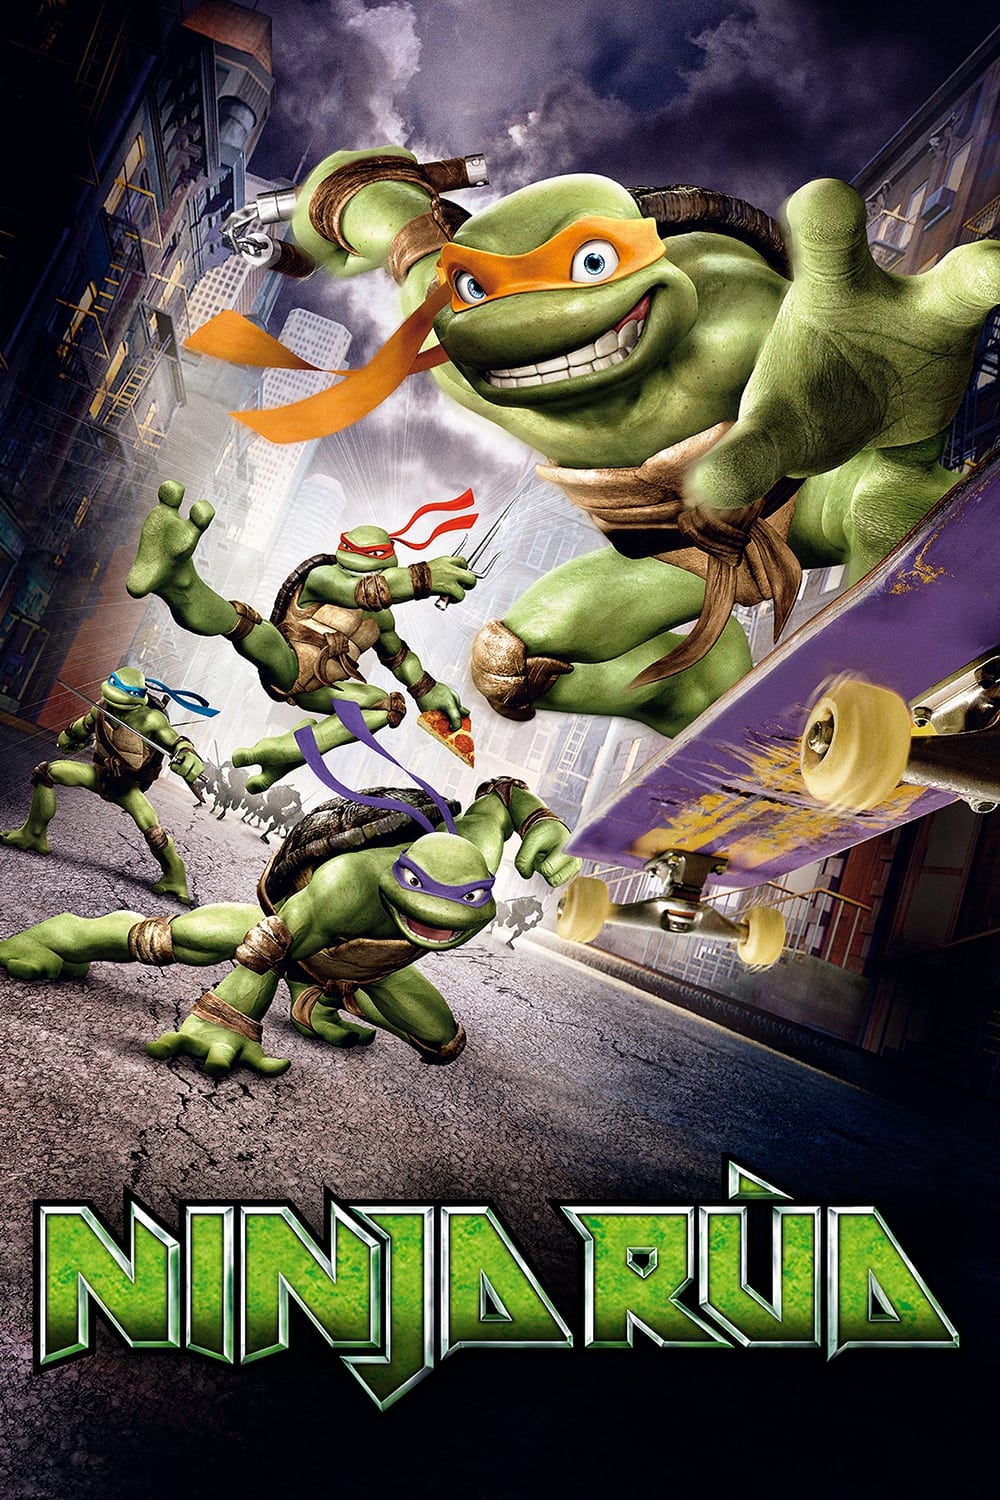 Ninja Rùa (TMNT) [2007]